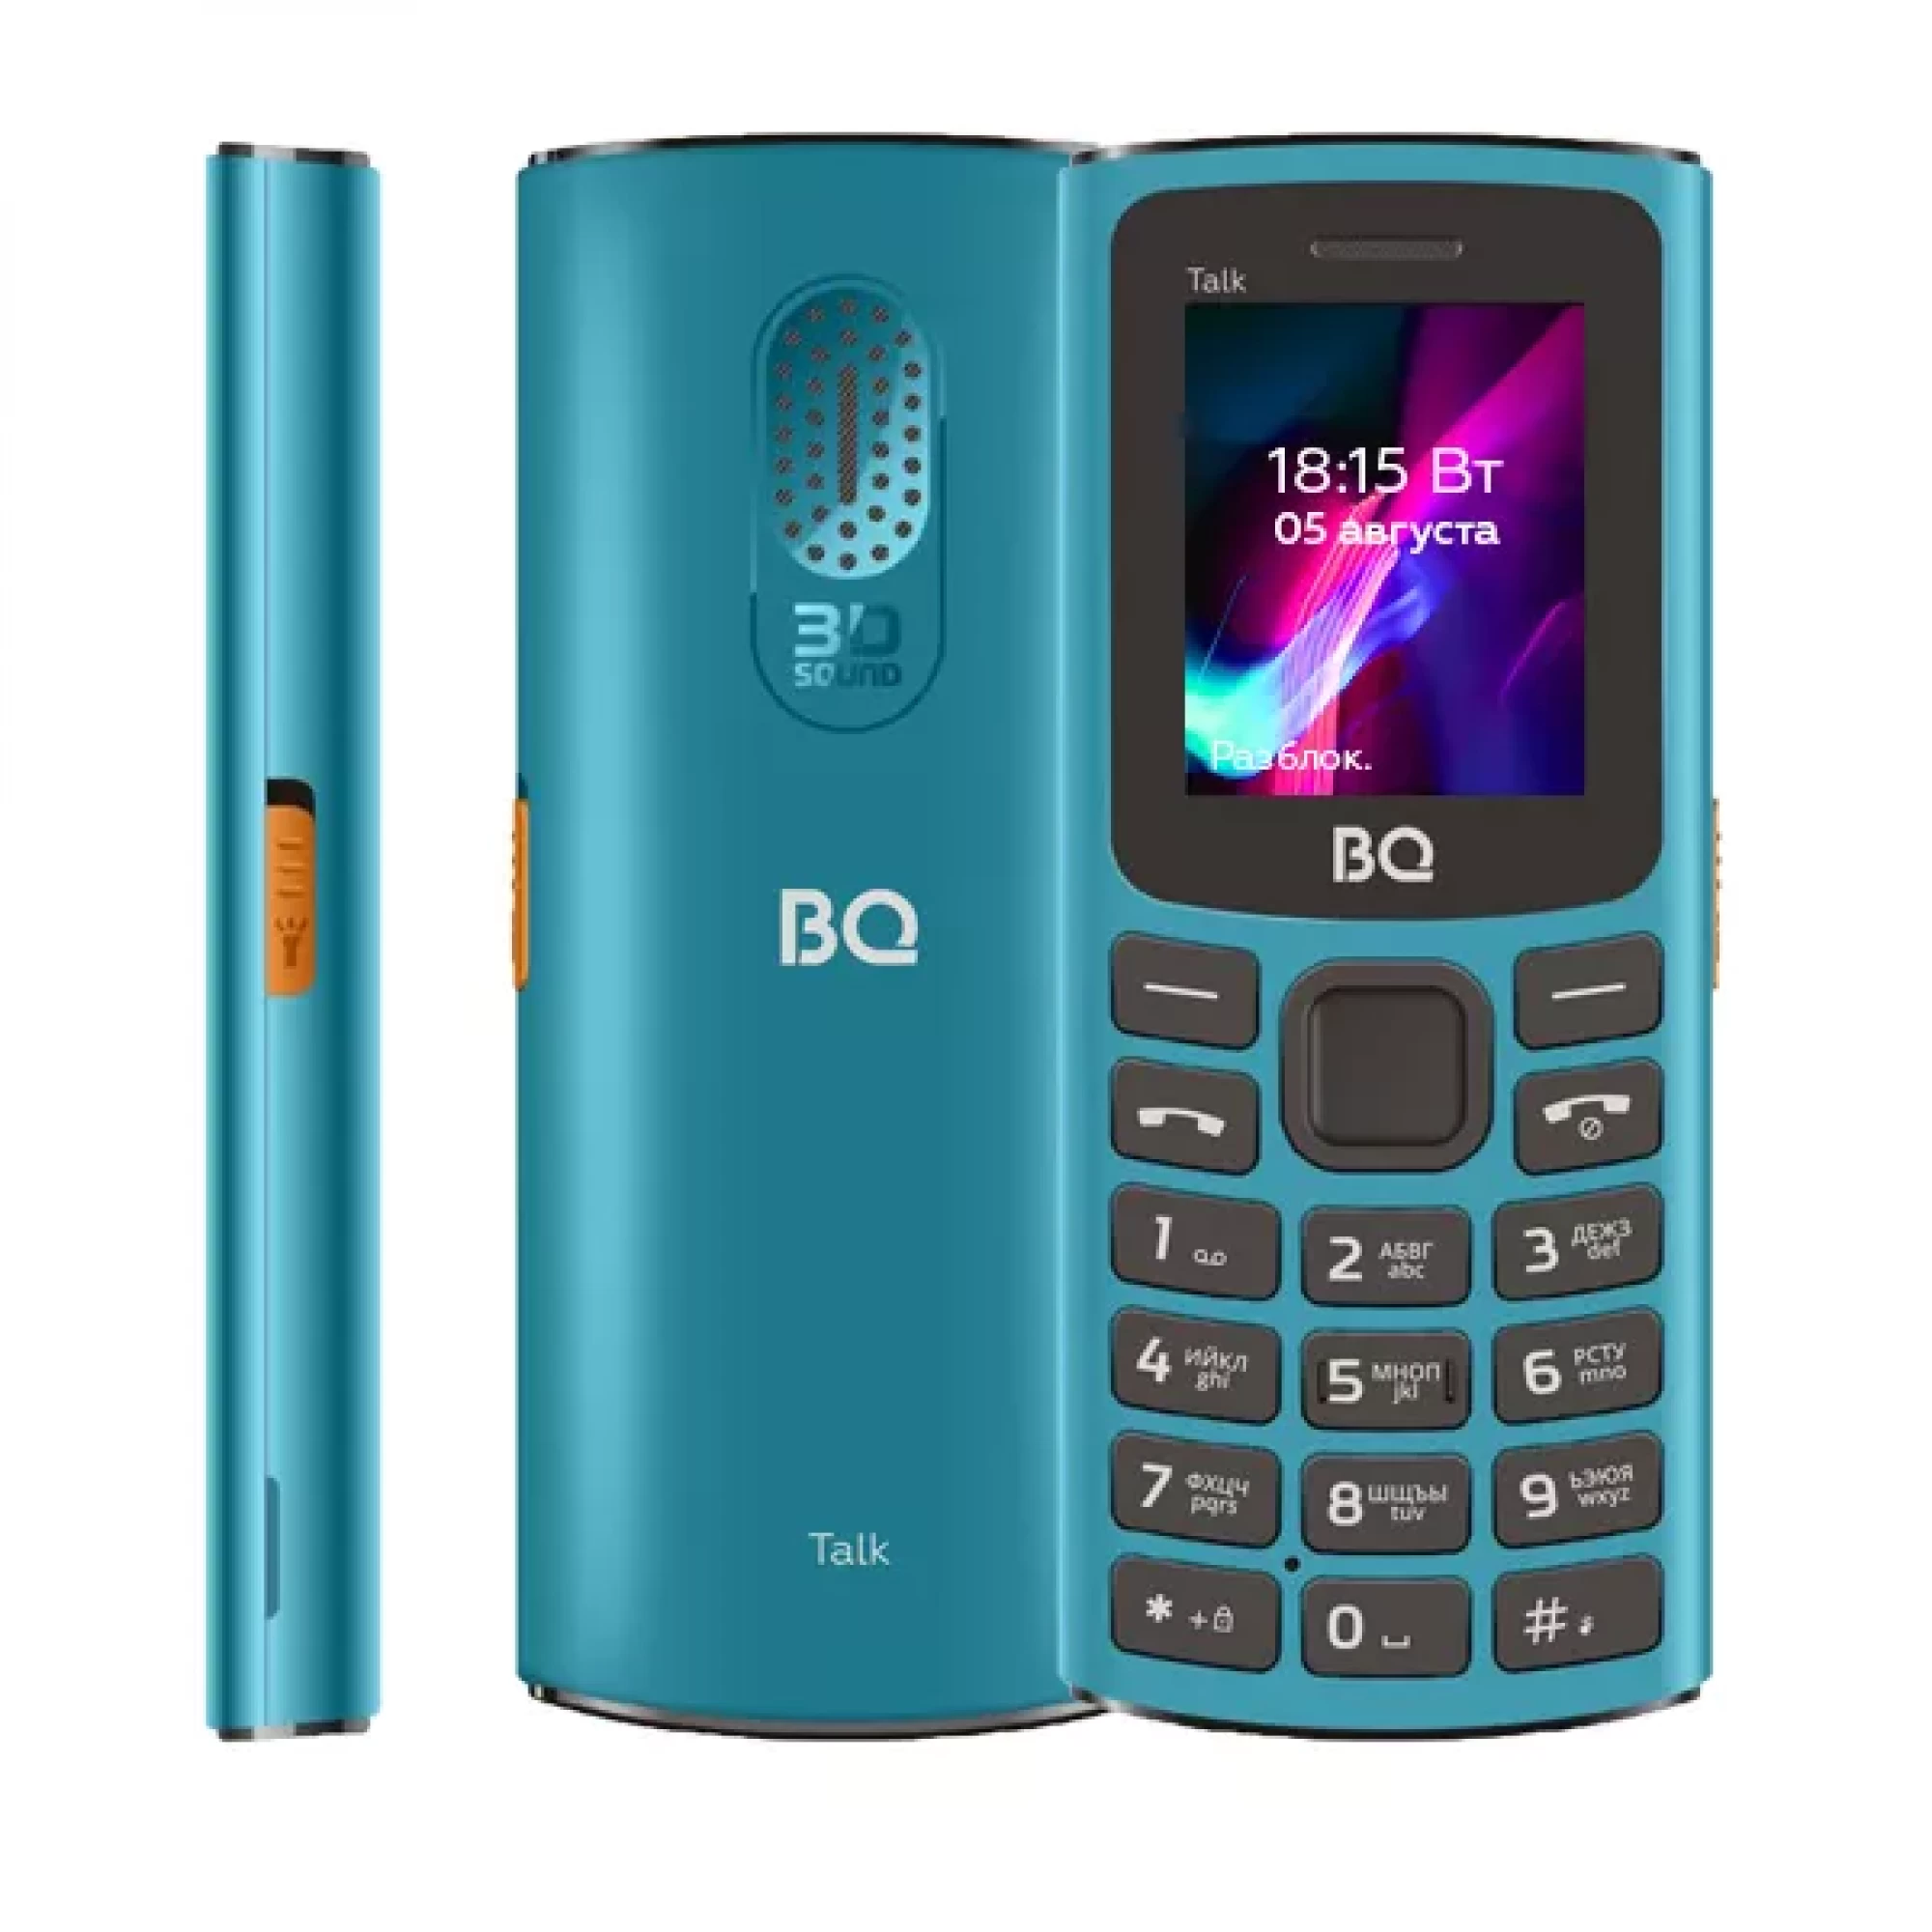 Мобильный телефон BQ BQ-1862 Talk (бирюзовый)